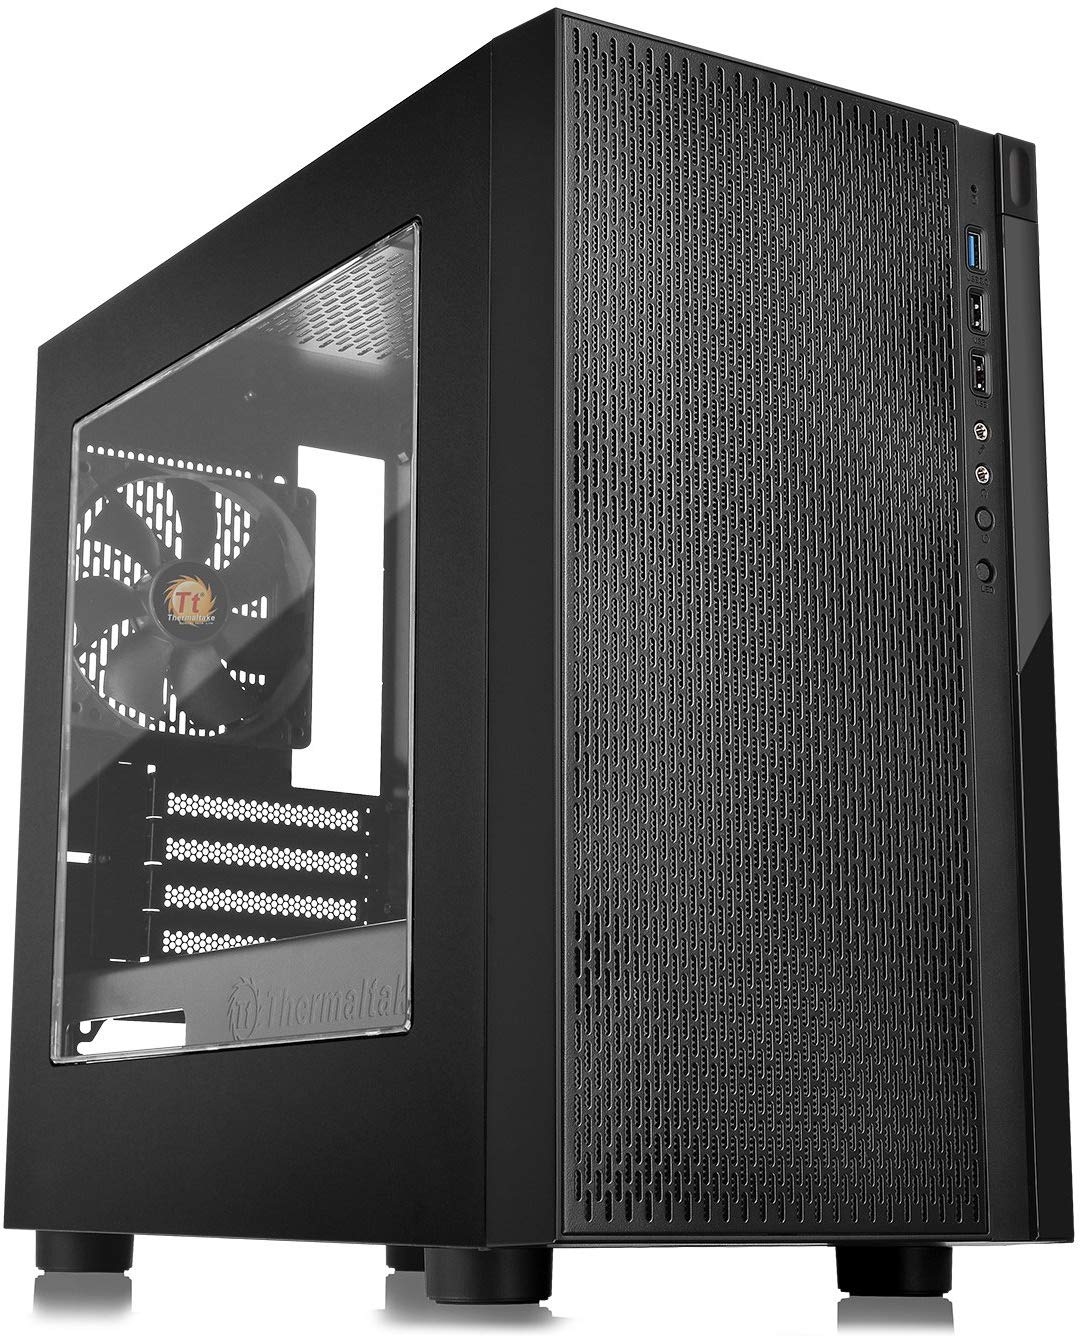  <b>Mini-Tower Case</b>: Versa H18 Window - Black<BR>1x 120mm Fan, 1x USB 3.0, 2x USB 2.0, Window Side Panel, Supports: mATX/mini-ITX  